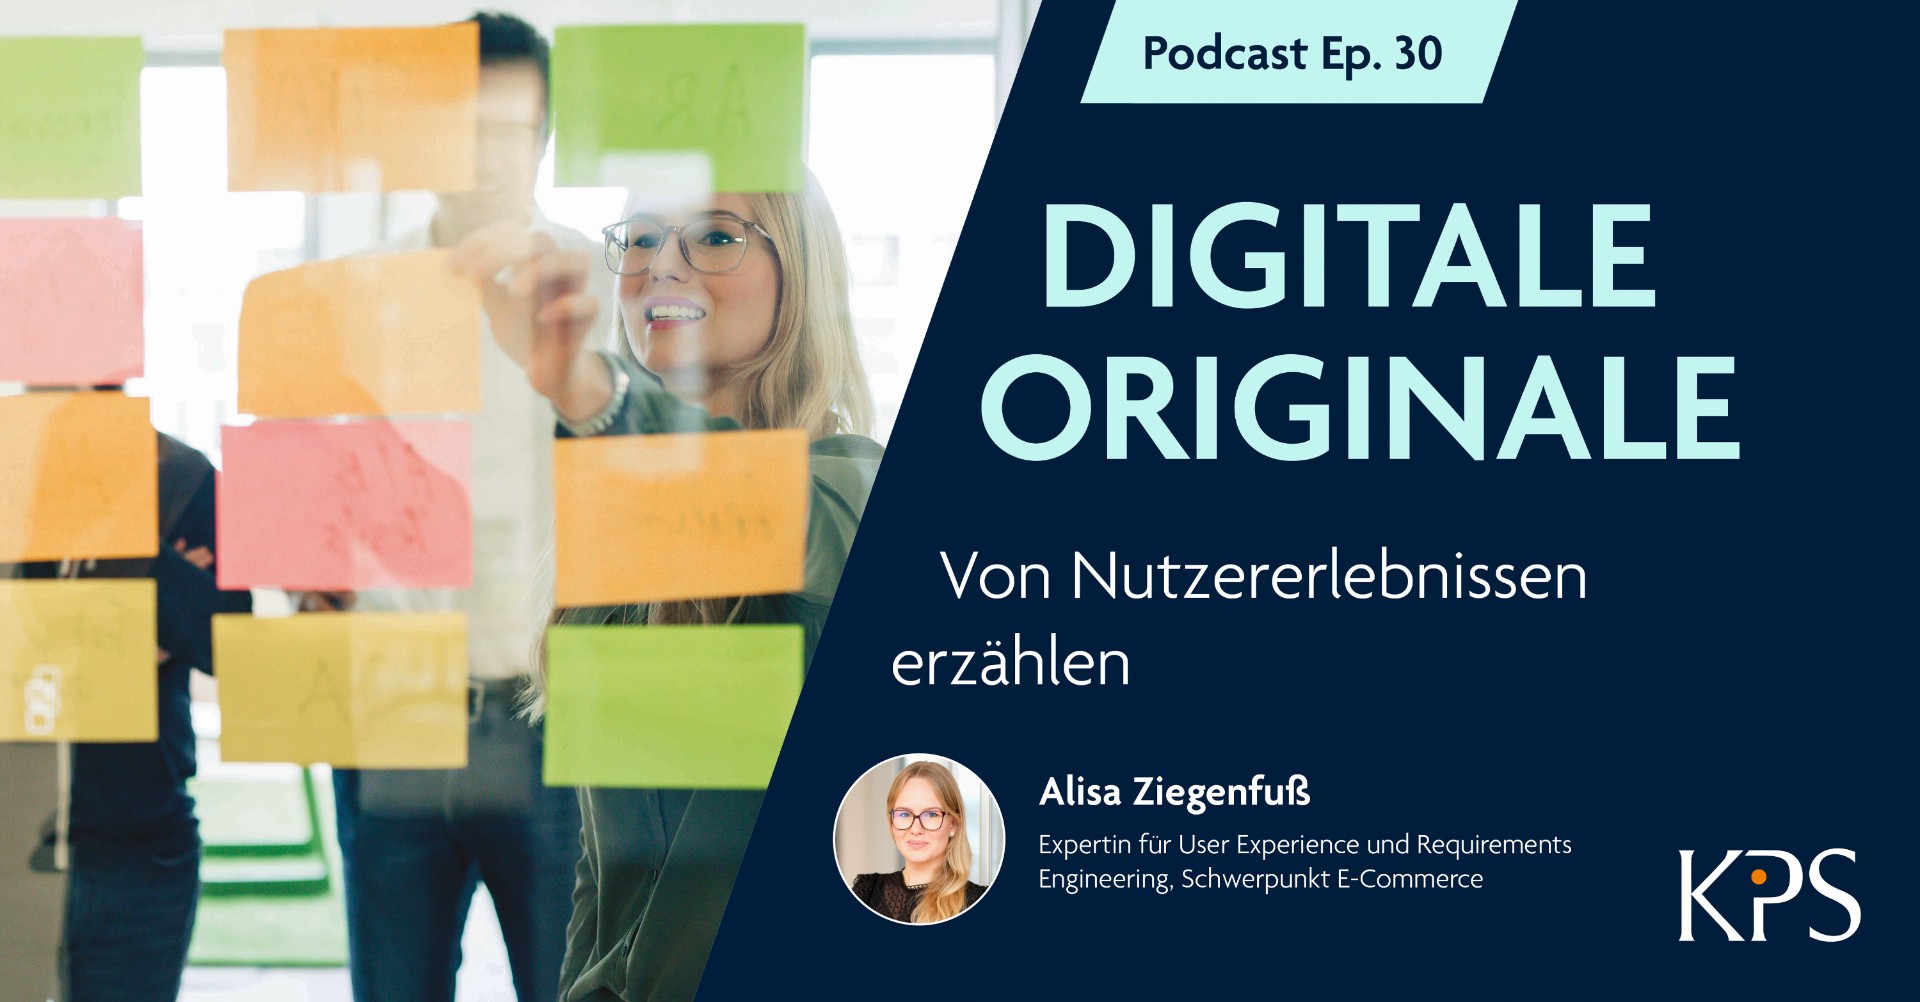 Podcast DIGITALE ORIGINALE – Von Nutzererlebnissen erzählen, mit Alisa Ziegenfuß